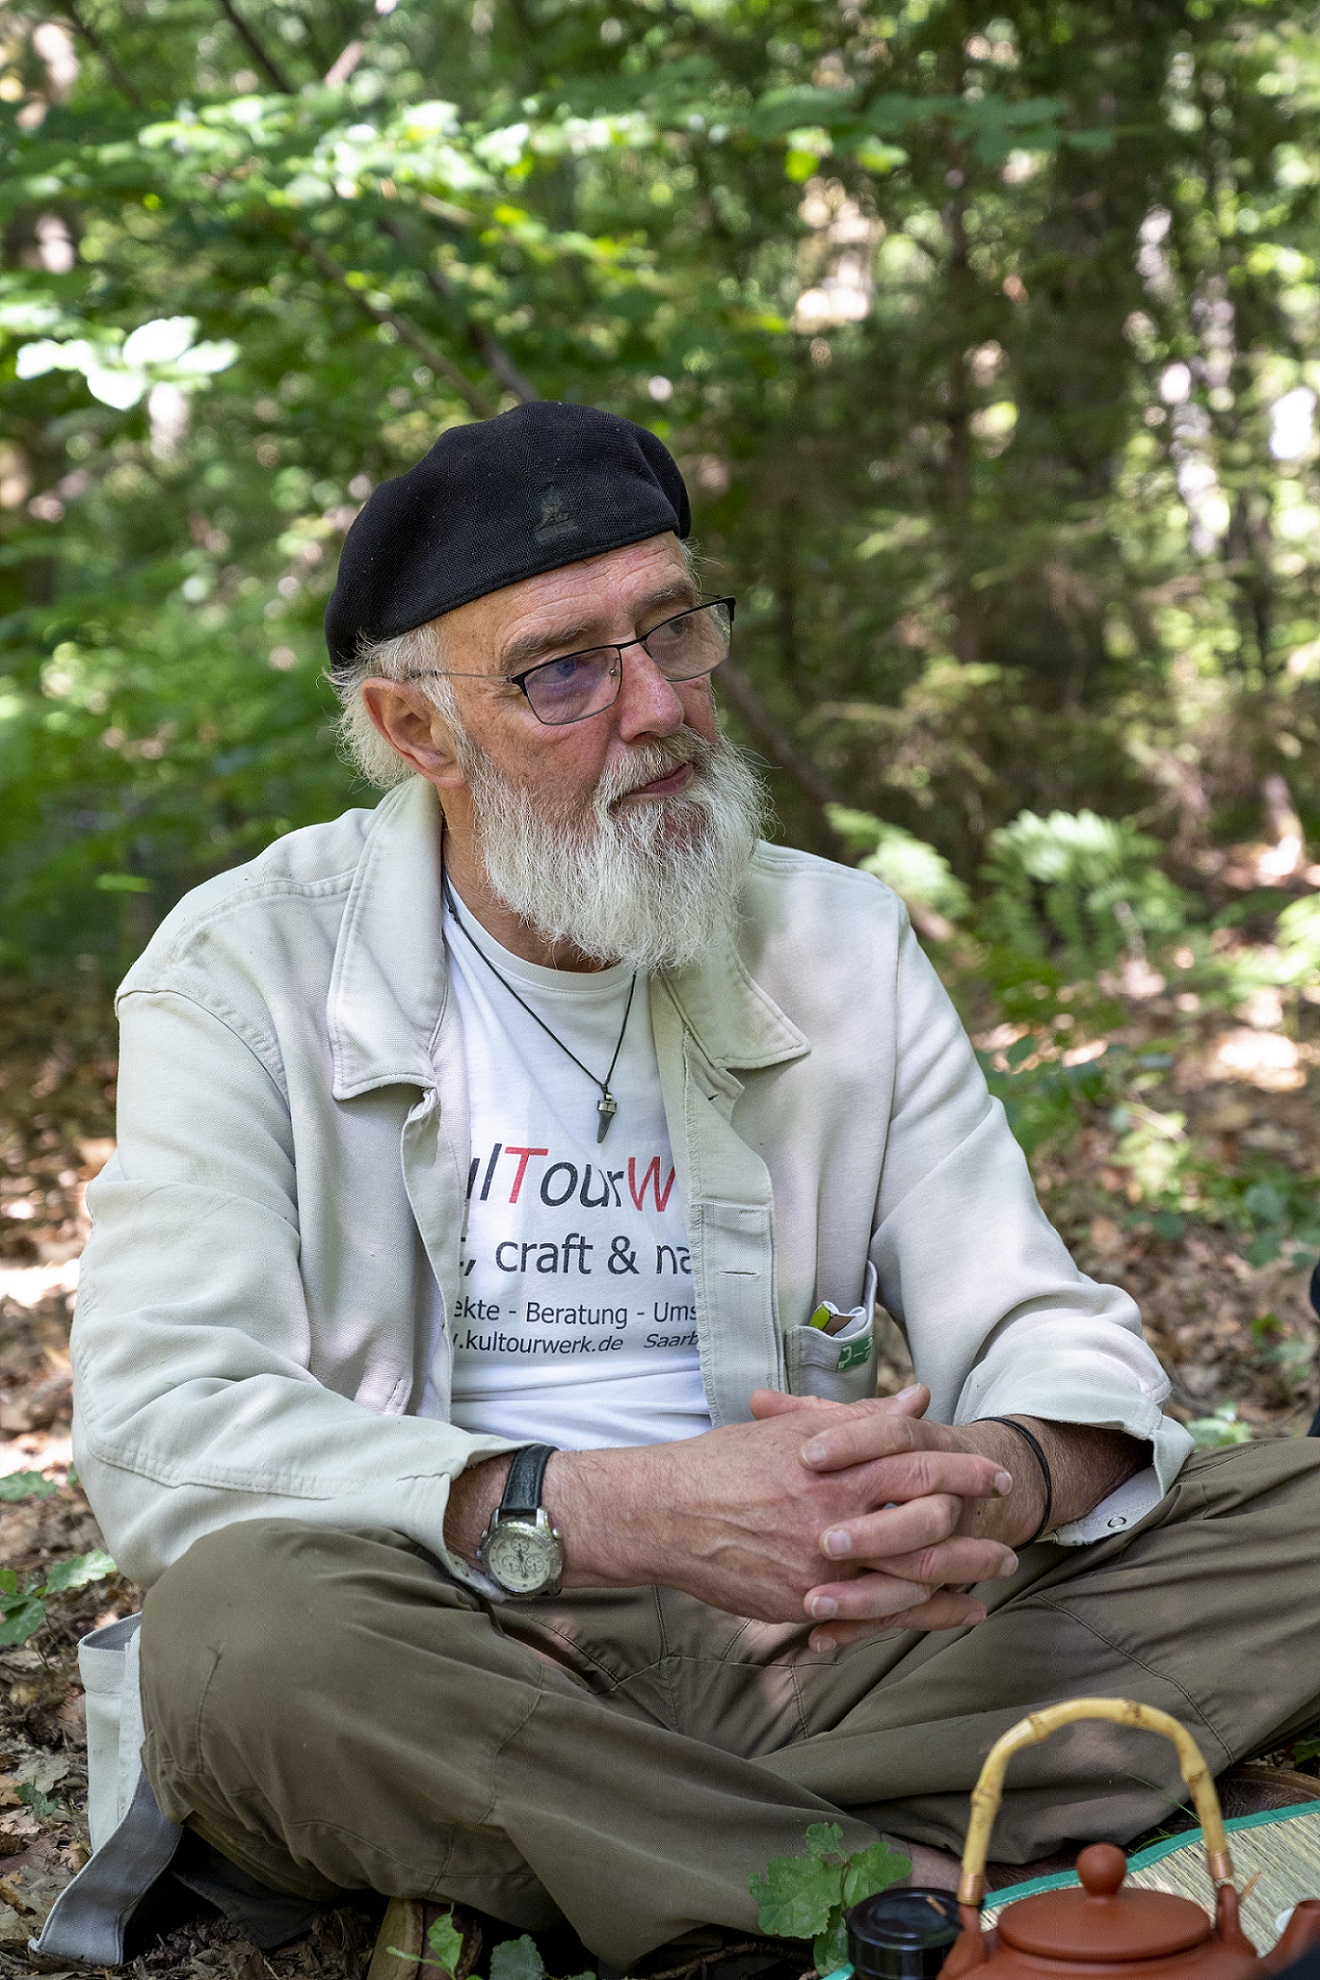 Portraitaufnahme von Lothar Wilhelm sitzend auf dem Waldboden mit ineinander verschränkten Händen. Er hat den Blick von der kamera abgewandt.